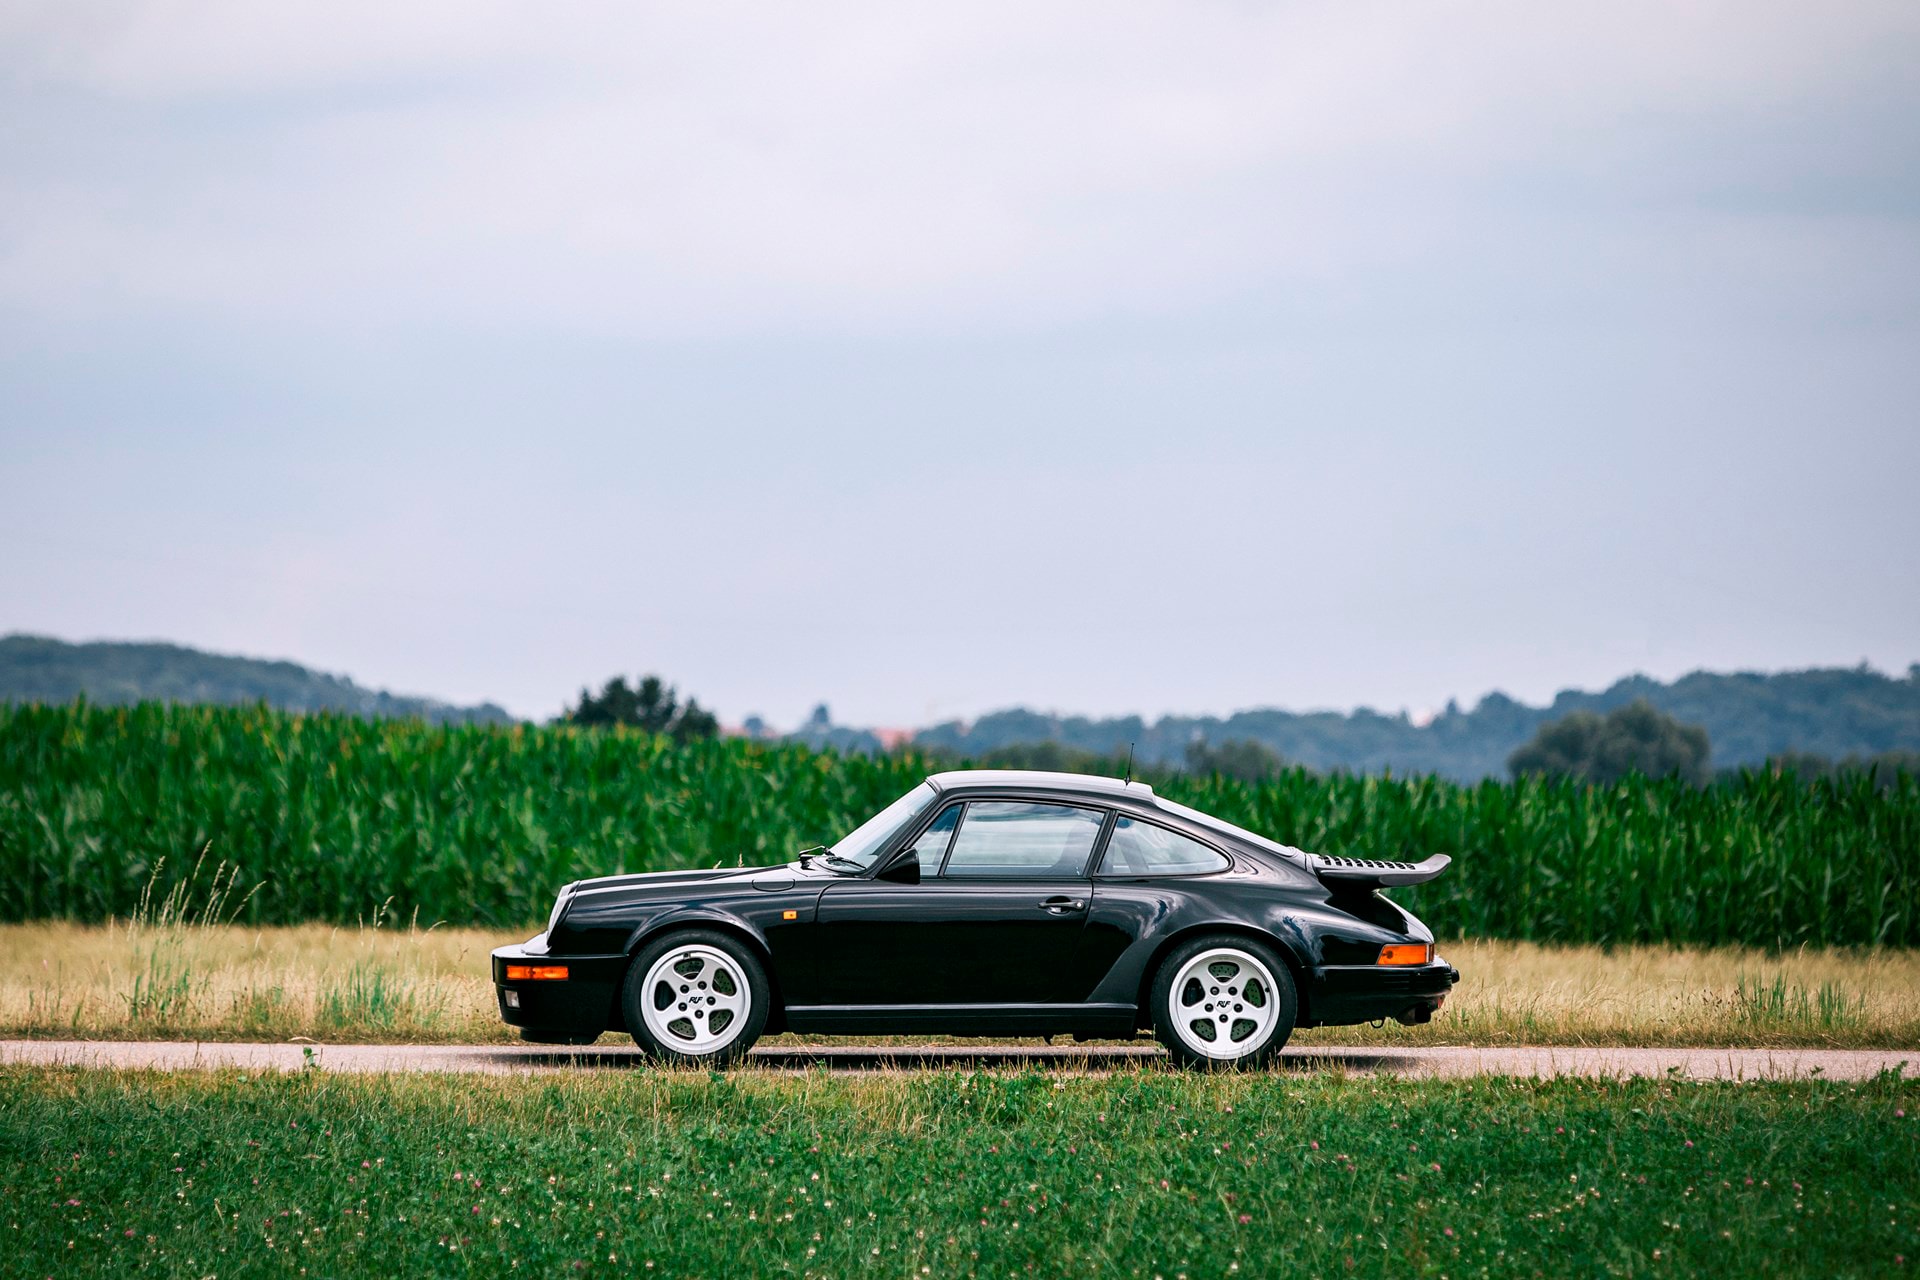 Porsche 911をベースにした1980年代後期の公道最速車両 RUF CTR  「Ferrari」や「Lamborghini」をも凌駕したヴィンテージスポーツカーの傑作 1939年創業の「RUF（ルーフ）」は、ただの「Porsche（ポルシェ）」のチューニングメーカーではない。排気ガスや耐久性などの社会的責任を持つことからドイツ自動車工業会への所属が認められており、Porsche 911をベースとしながらも車体、シャシー、エンジンの全てを徹底的に改良したCTRは、今なお名車としてクルマ好きの脳裏にその存在が刻まれている。  それもそのはず、CTRは1989年当時、市販車として購入できるモデルの最速レコードを保持していたのだ。「Ferrari（フェラリー）」の288GTO、「Mercedes-AMG（メルセデスAMG）」の560SEC 6.0-4V、「Lamborghini（ランボルギーニ）」のCountach、「Porsche」の959など、各メーカーがこぞってスペックの高いモデルを世に送りこんでいたあの時代、イエローバードの愛称で親しまれるCTRは「Road & Track」誌の市販車最速企画で「Ferrari」のF40が持っていた323km/hを塗り替える339.8km/hを記録し、その名を世界に知らしめた。  そんな4輪乗りのロマンとも言える一台より、故障もリストアもされていないオリジナル車両が世界最高峰のオークション「RM Sotheby's」に登場。ここまで状態が良く、52,200kmしか走行していないCTRが市場に姿を現すことは金輪際ないかもしれない。  クルマ好きでもそうでなくとも、その洗練されたプロダクトデザインを是非、上のフォトギャラリーから堪能してみてはいかがだろうか。  推定落札価格の2倍の値がついた「Mercedes-Benz」の300 SL 後期モデルや、世に出回ることのなかった1961年製の幻のオープンカー Plymouth Asimmetrica Concept